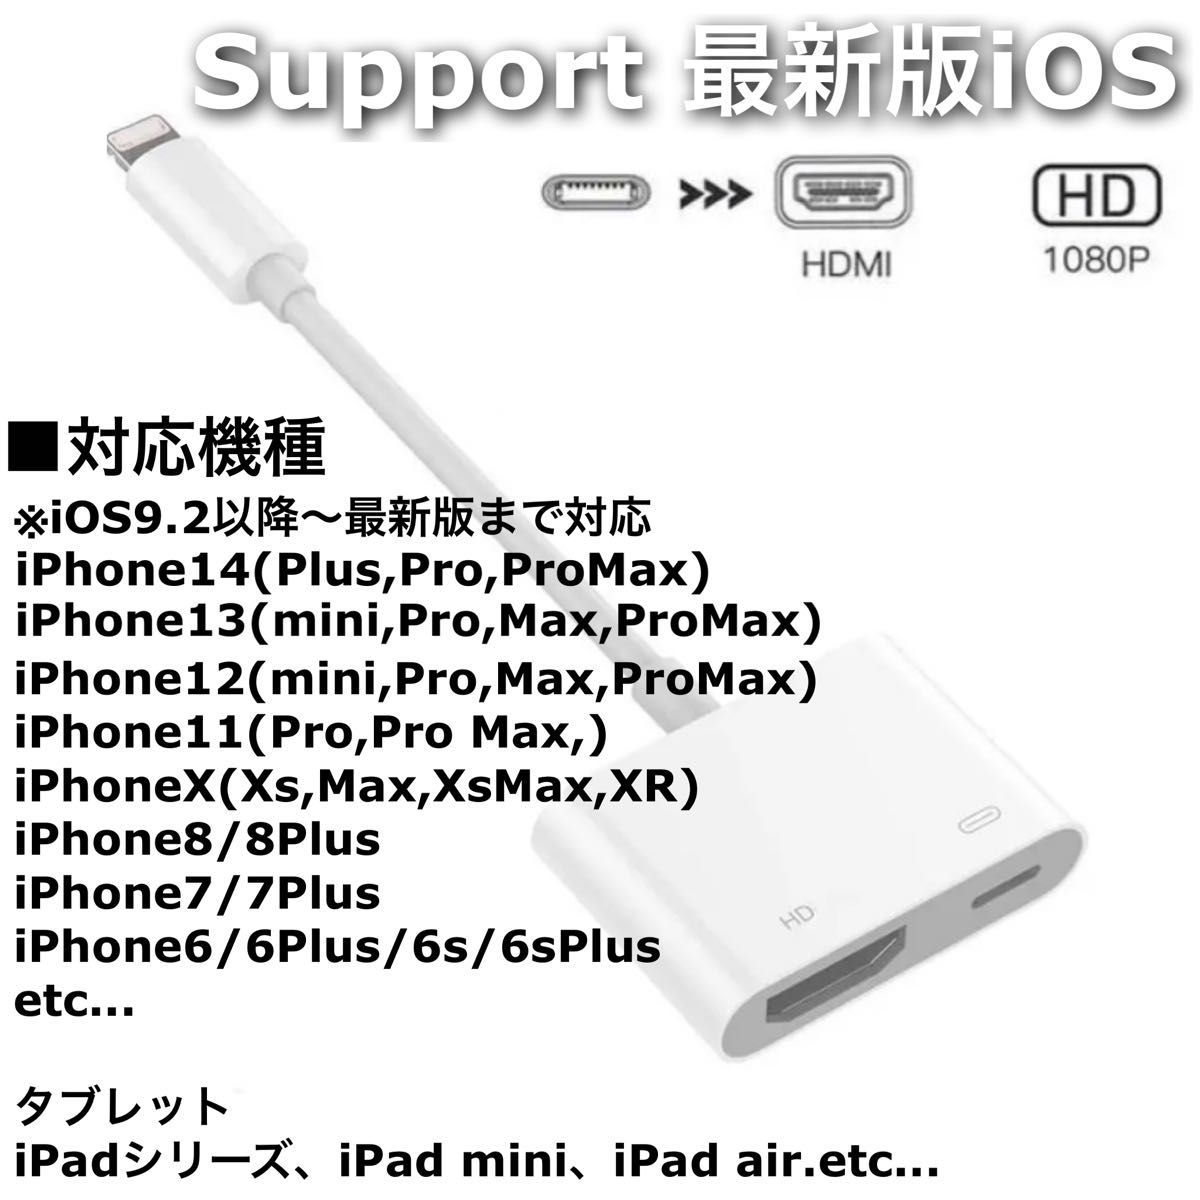 2点 3m iPhone iPad HDMI 変換アダプタ ケーブル iPhoneテレビ スマホテレビ テレビスマホ スマホ